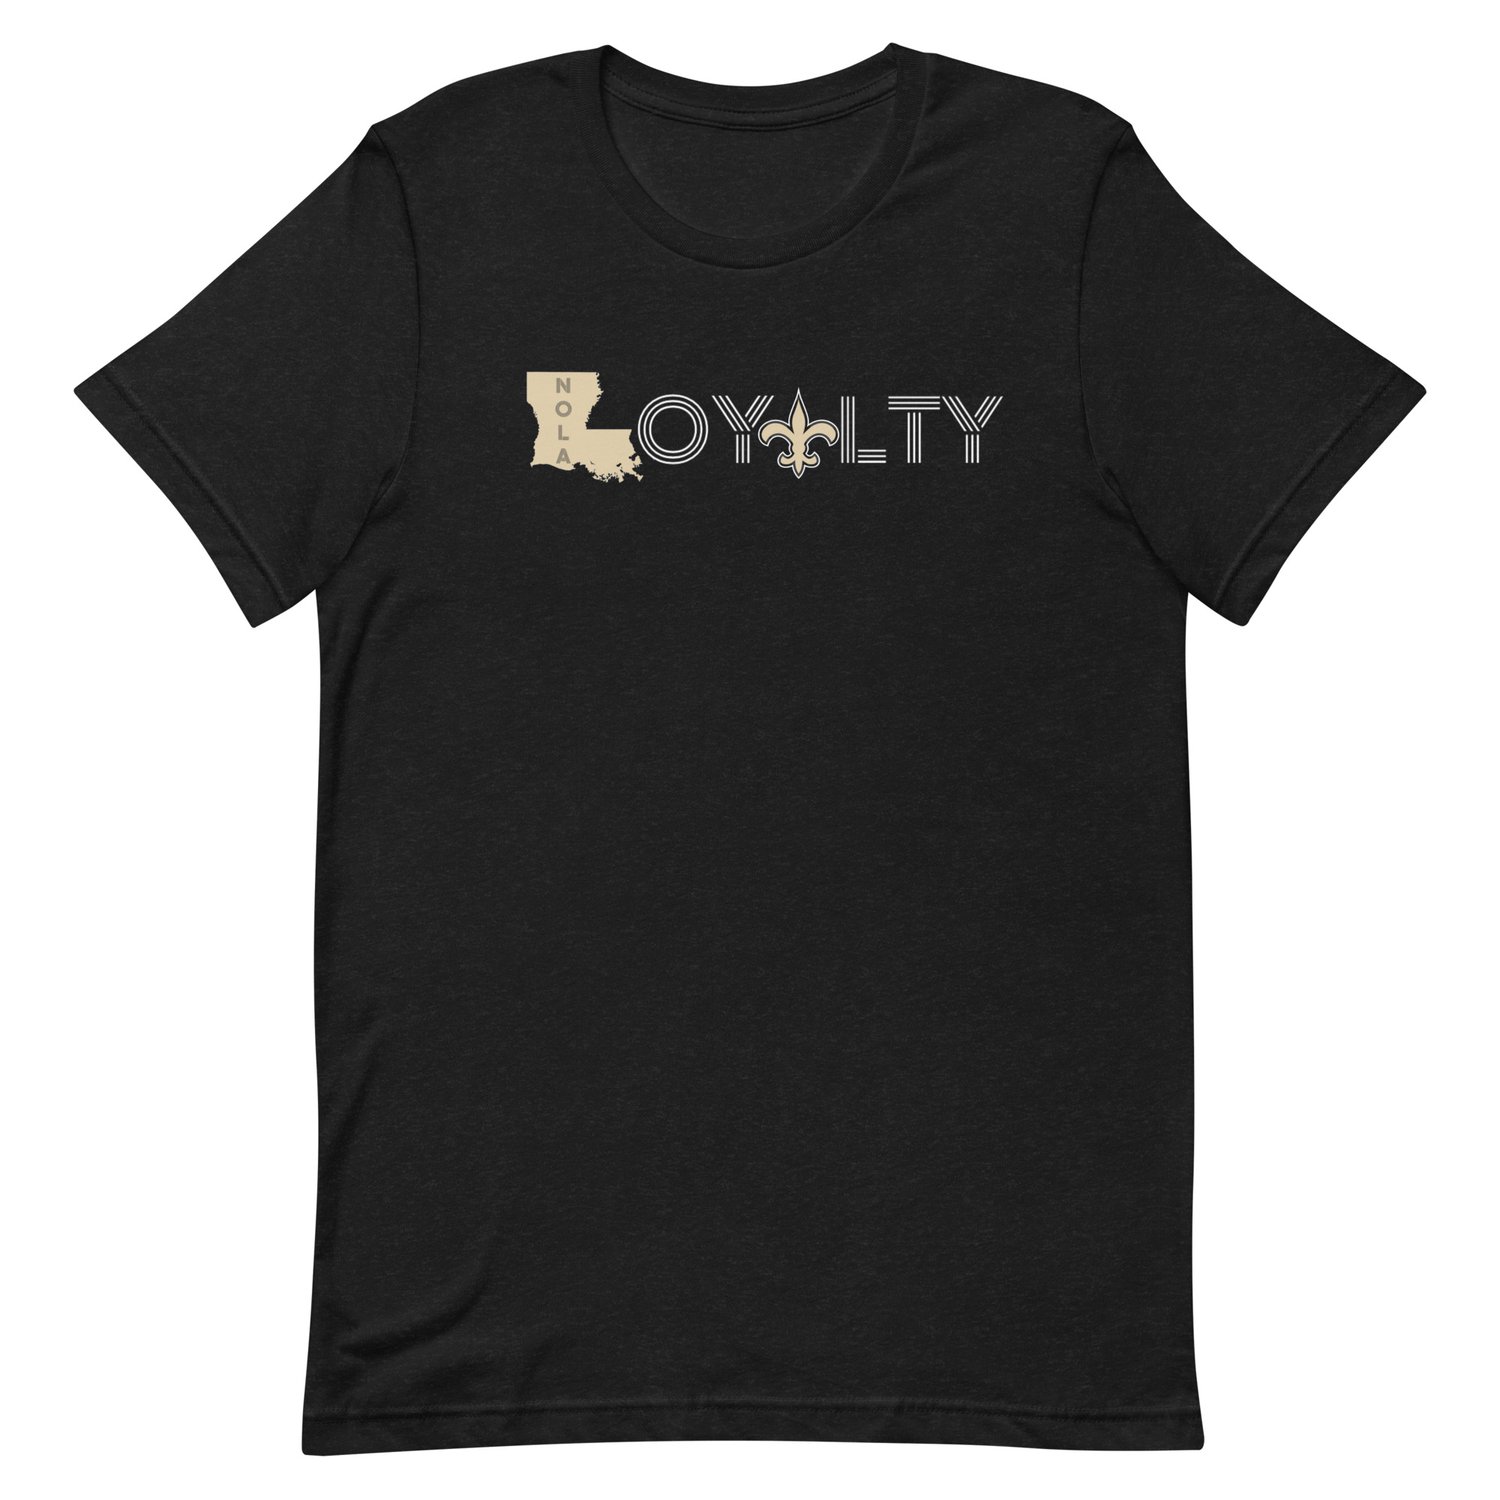 Image of “LOYALTY” Unisex t-shirt